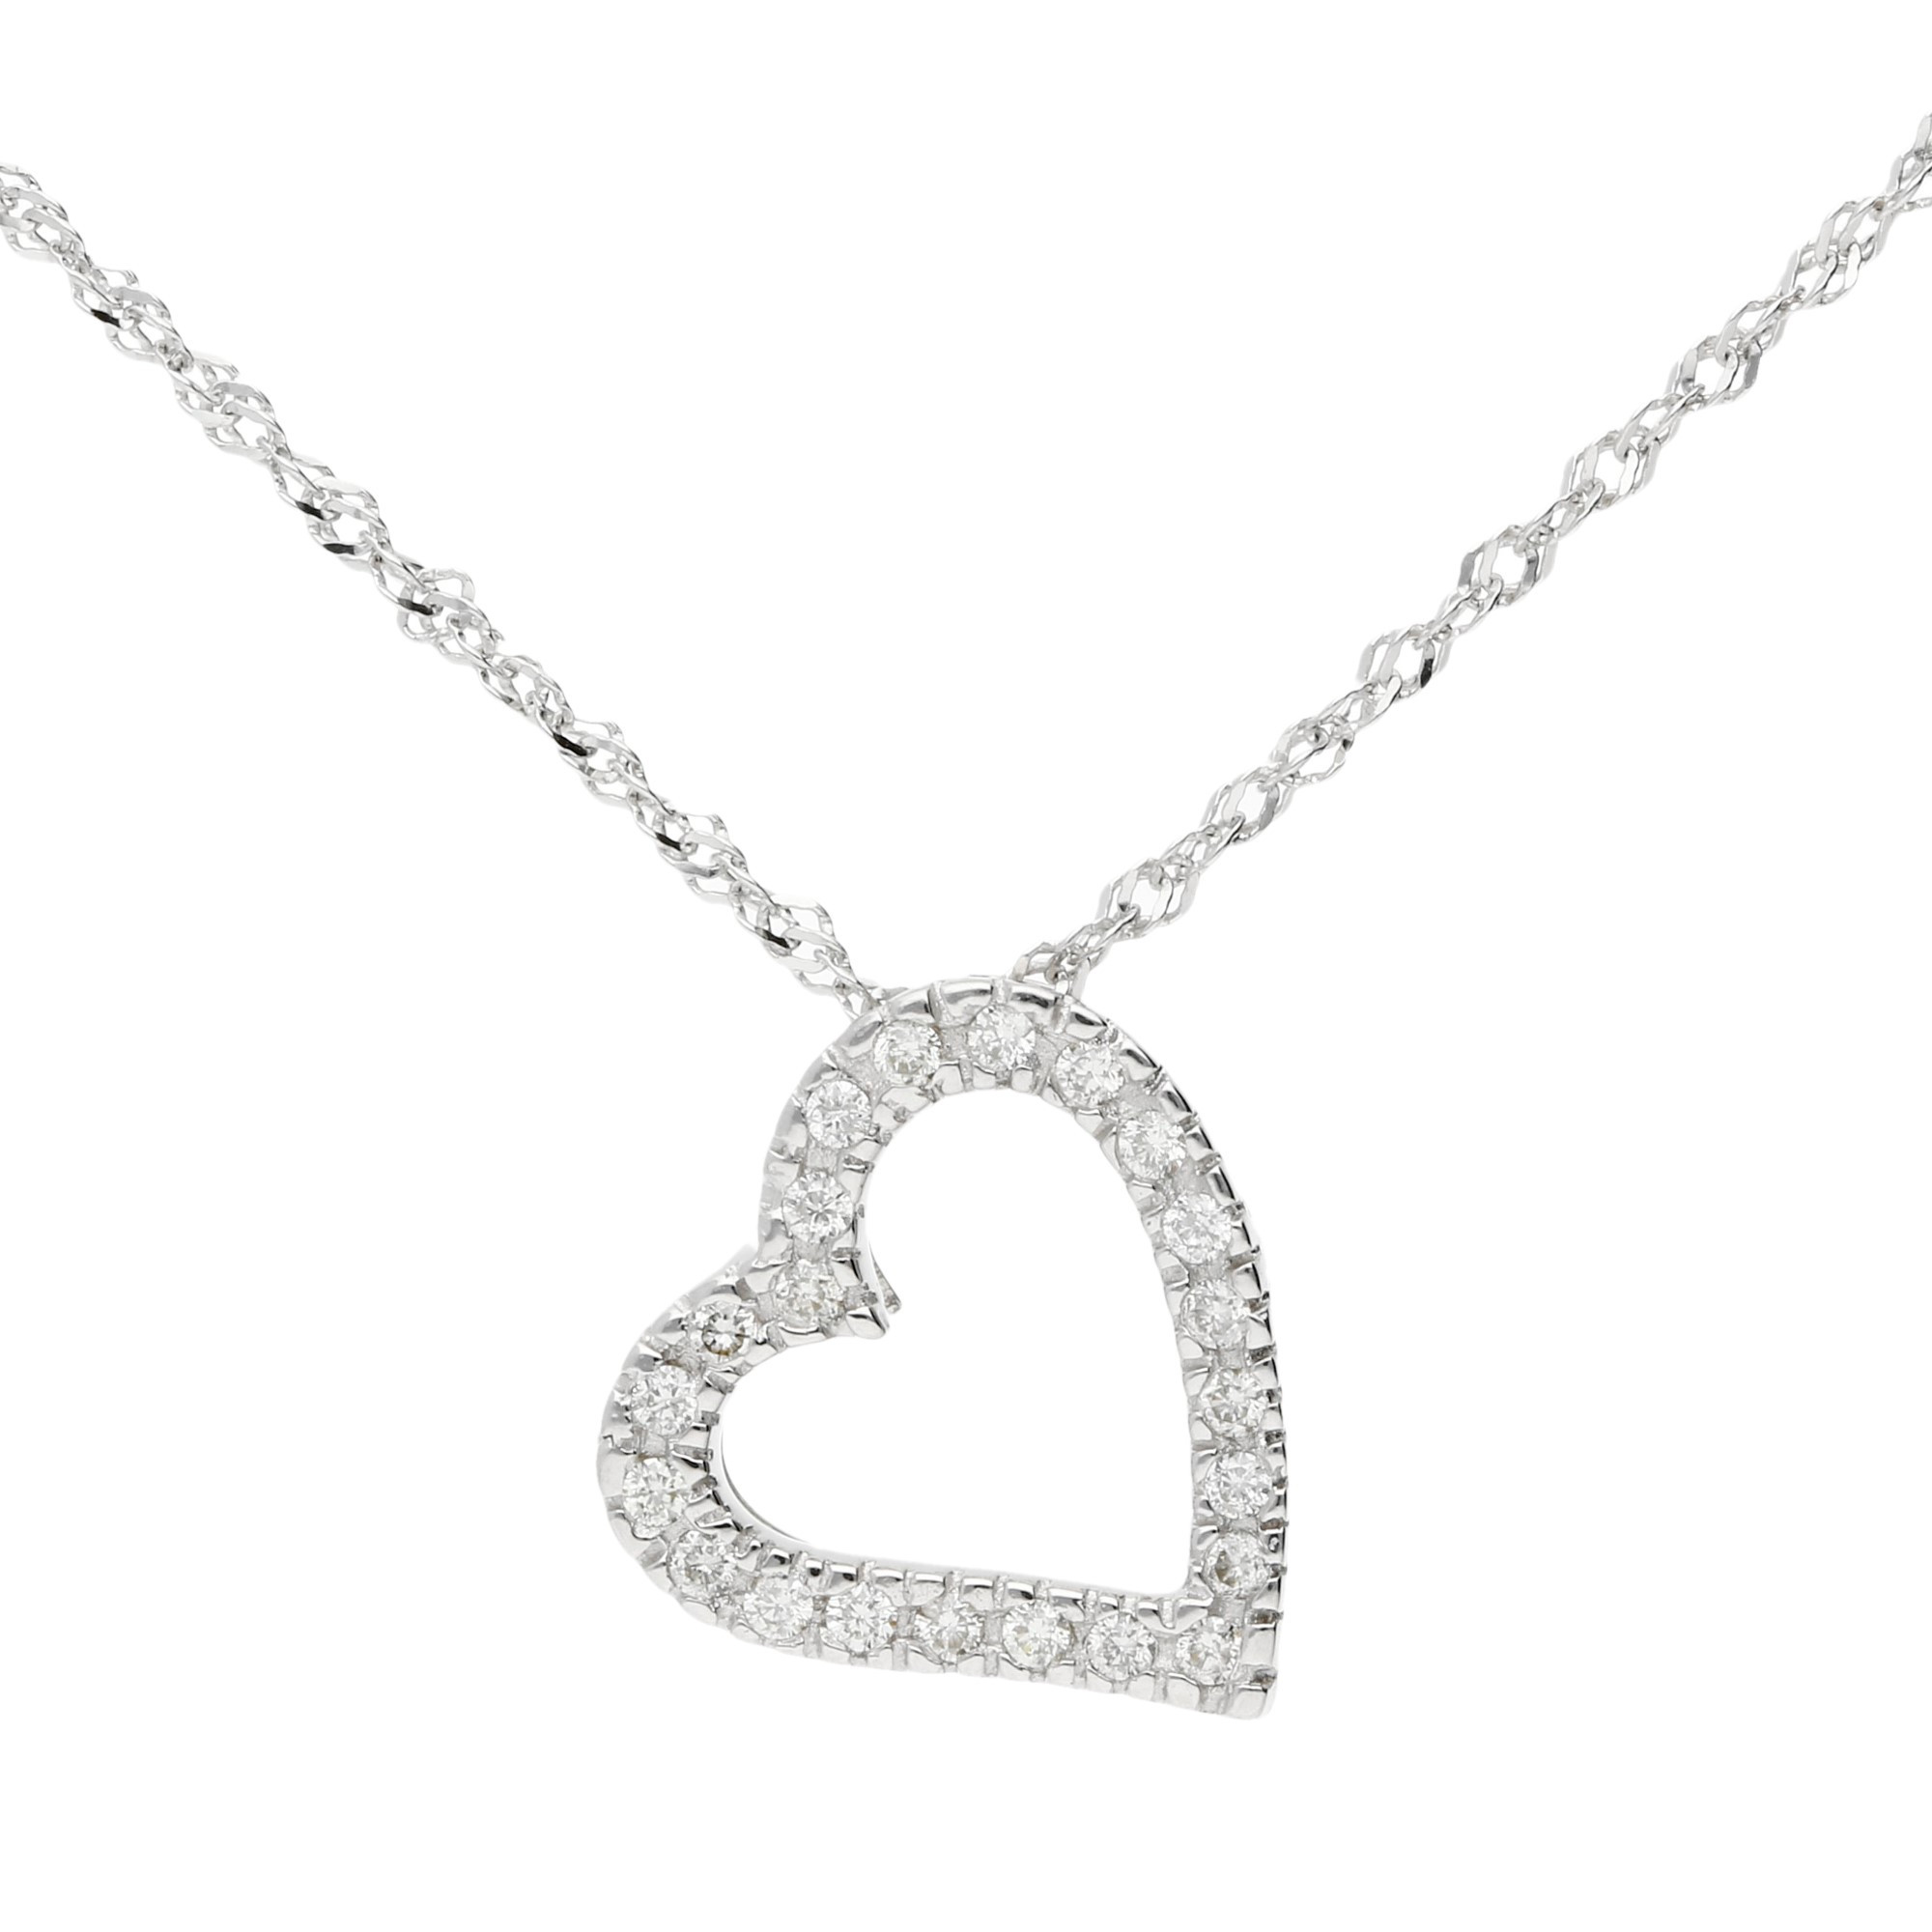 9ct White Gold Diamond Heart Pendant | Buy Online | Free Insured UK ...